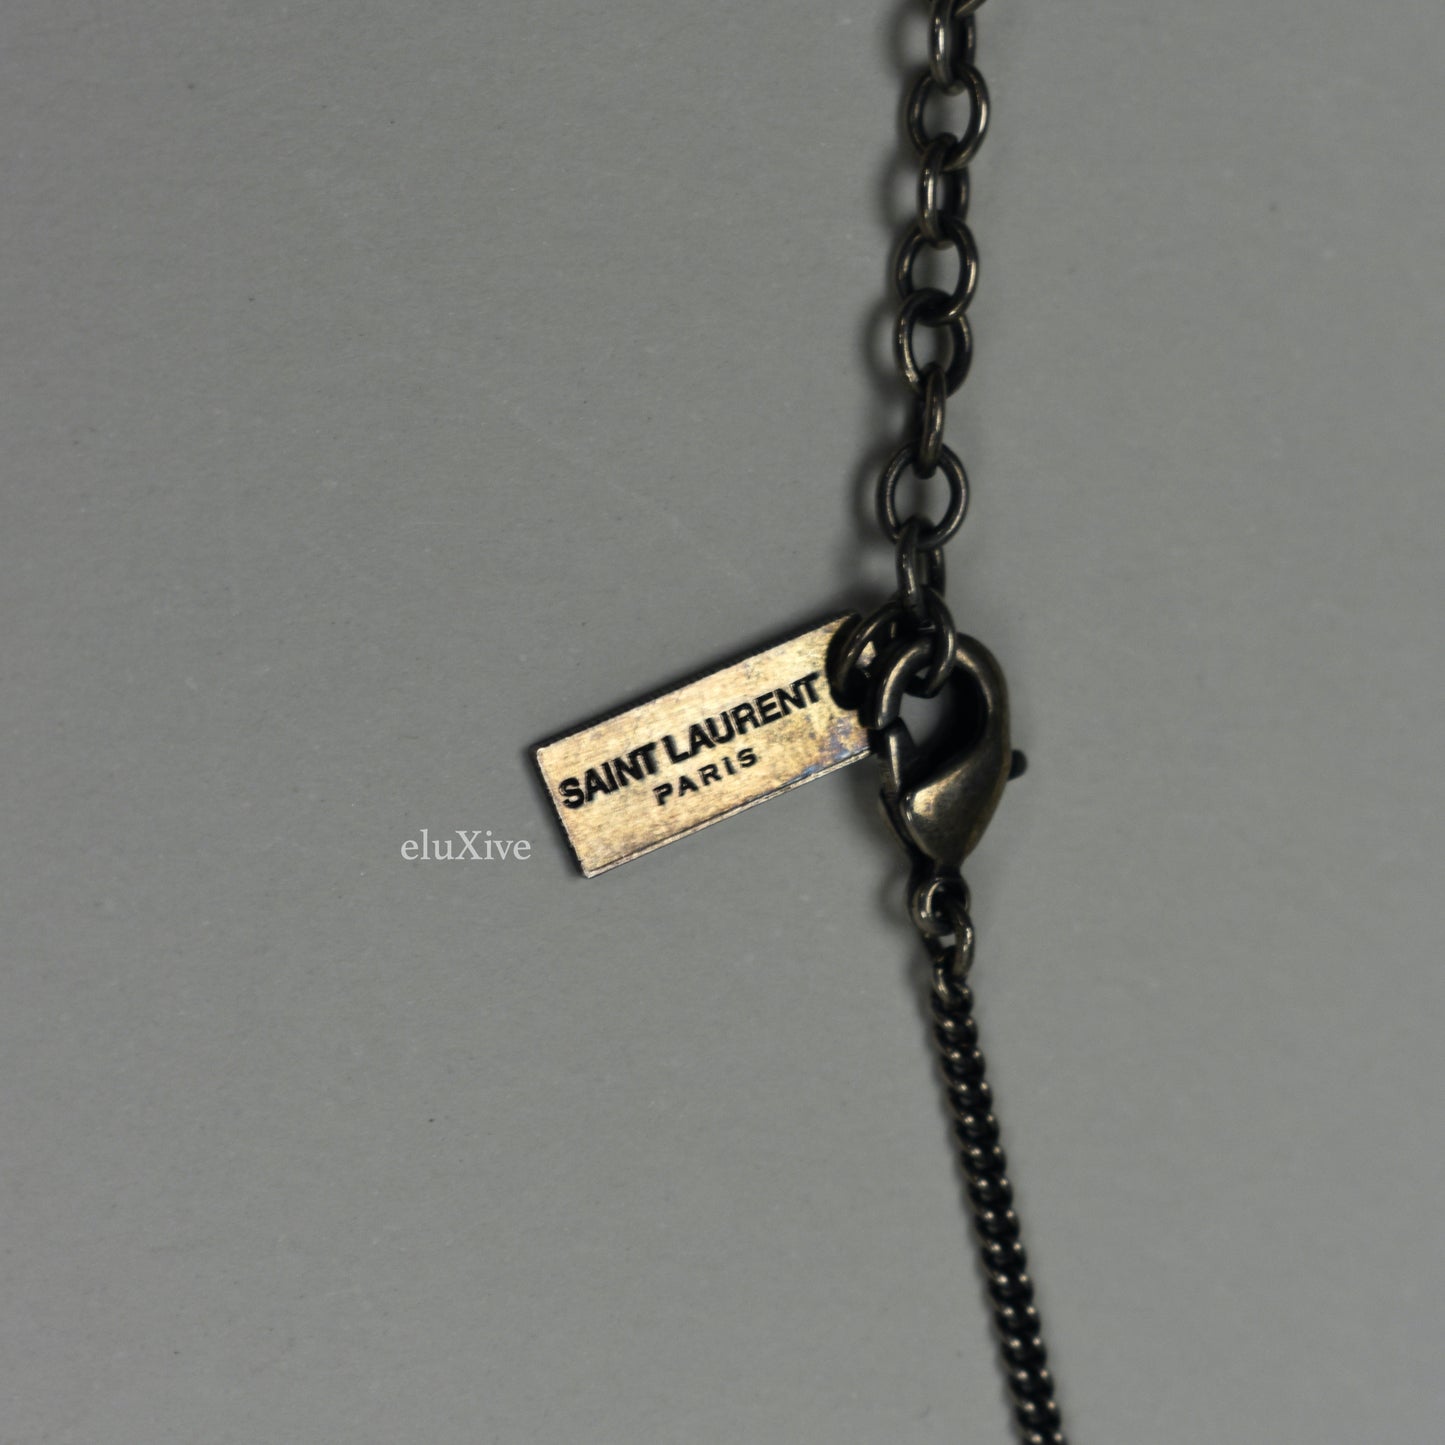 Saint Laurent - Vintage Effect Dog Tag Pendant Necklace